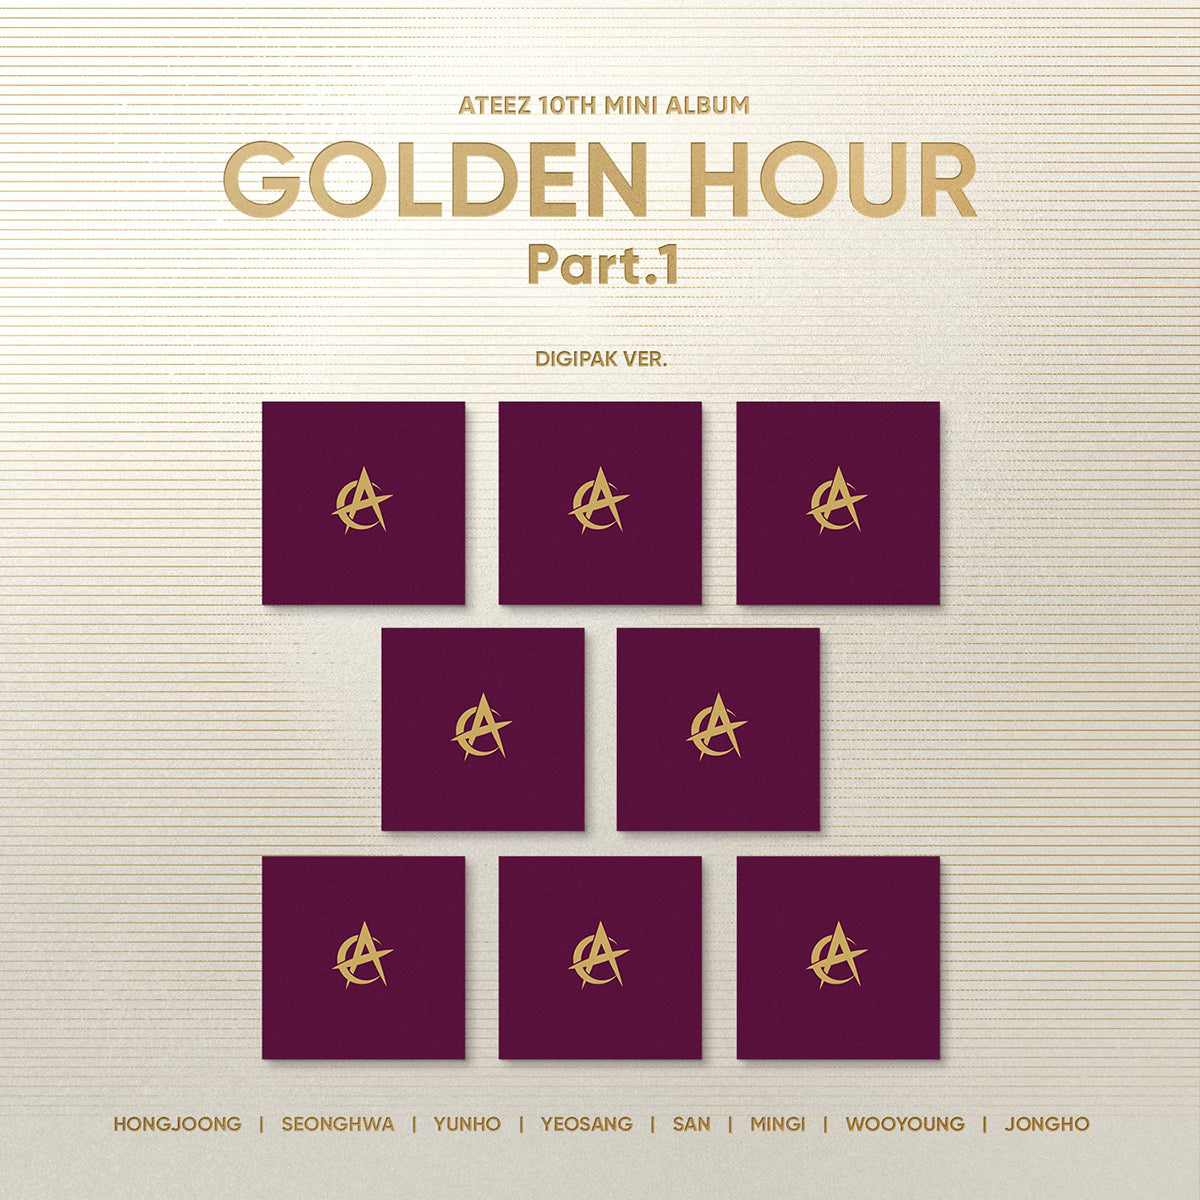 ATEEZ - GOLDEN HOUR : Part.1 (DIGIPACK Ver.)